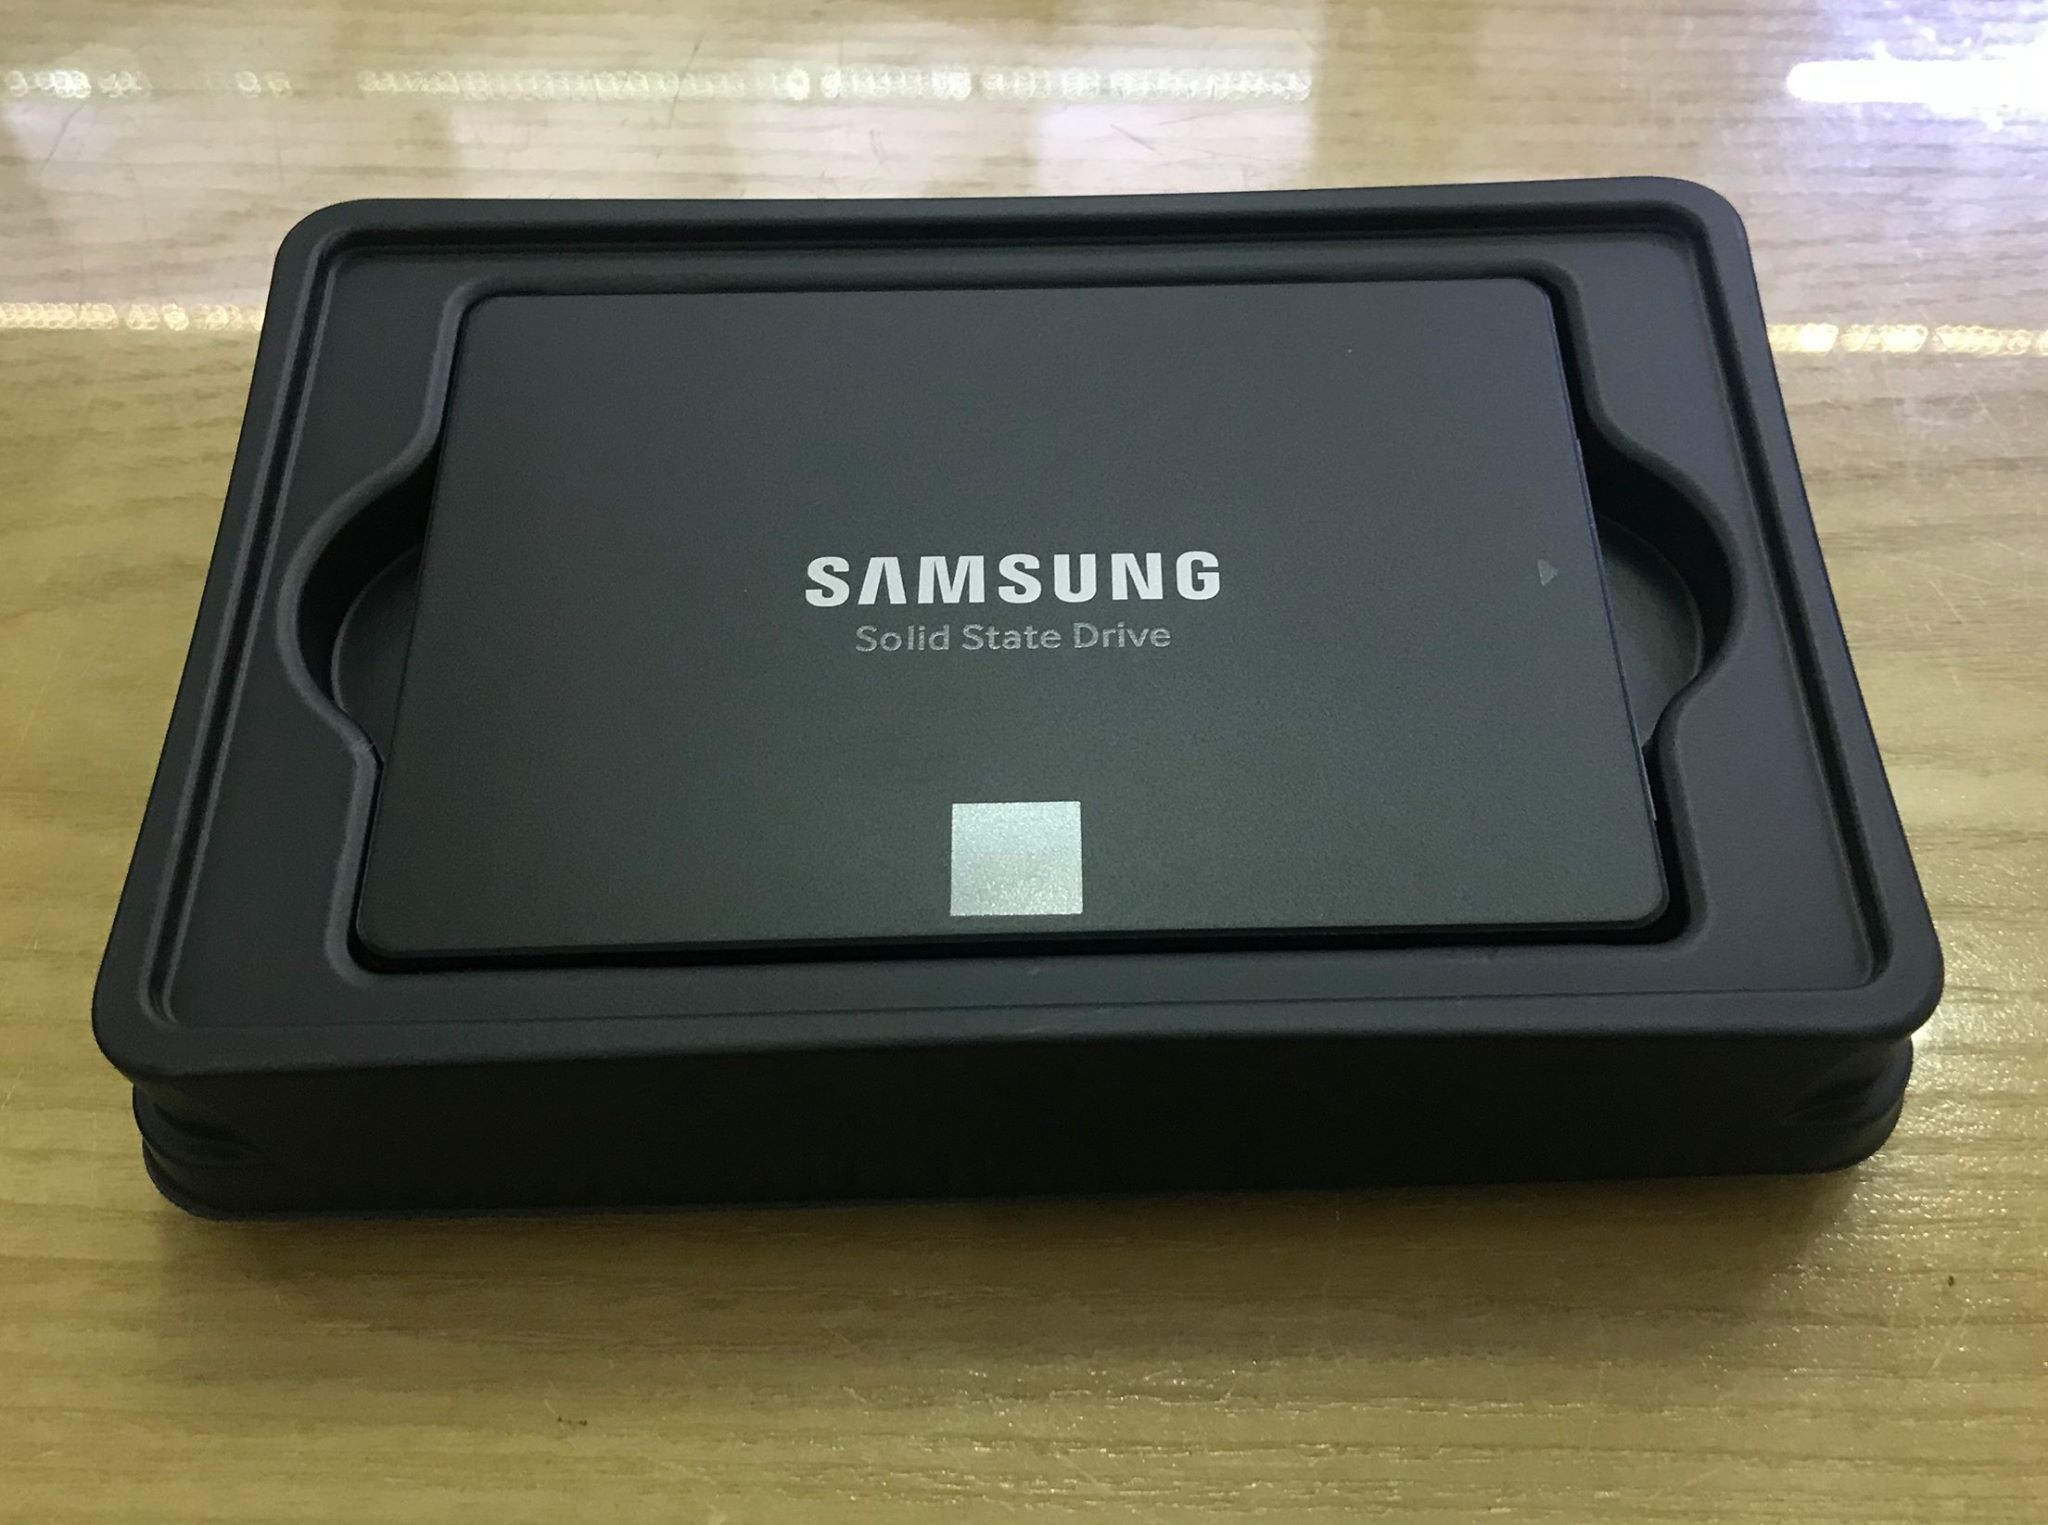 Samsung giới thiệu ổ cứng SSD có dung lượng lớn nhất thế giới với tận 30TB lưu trữ